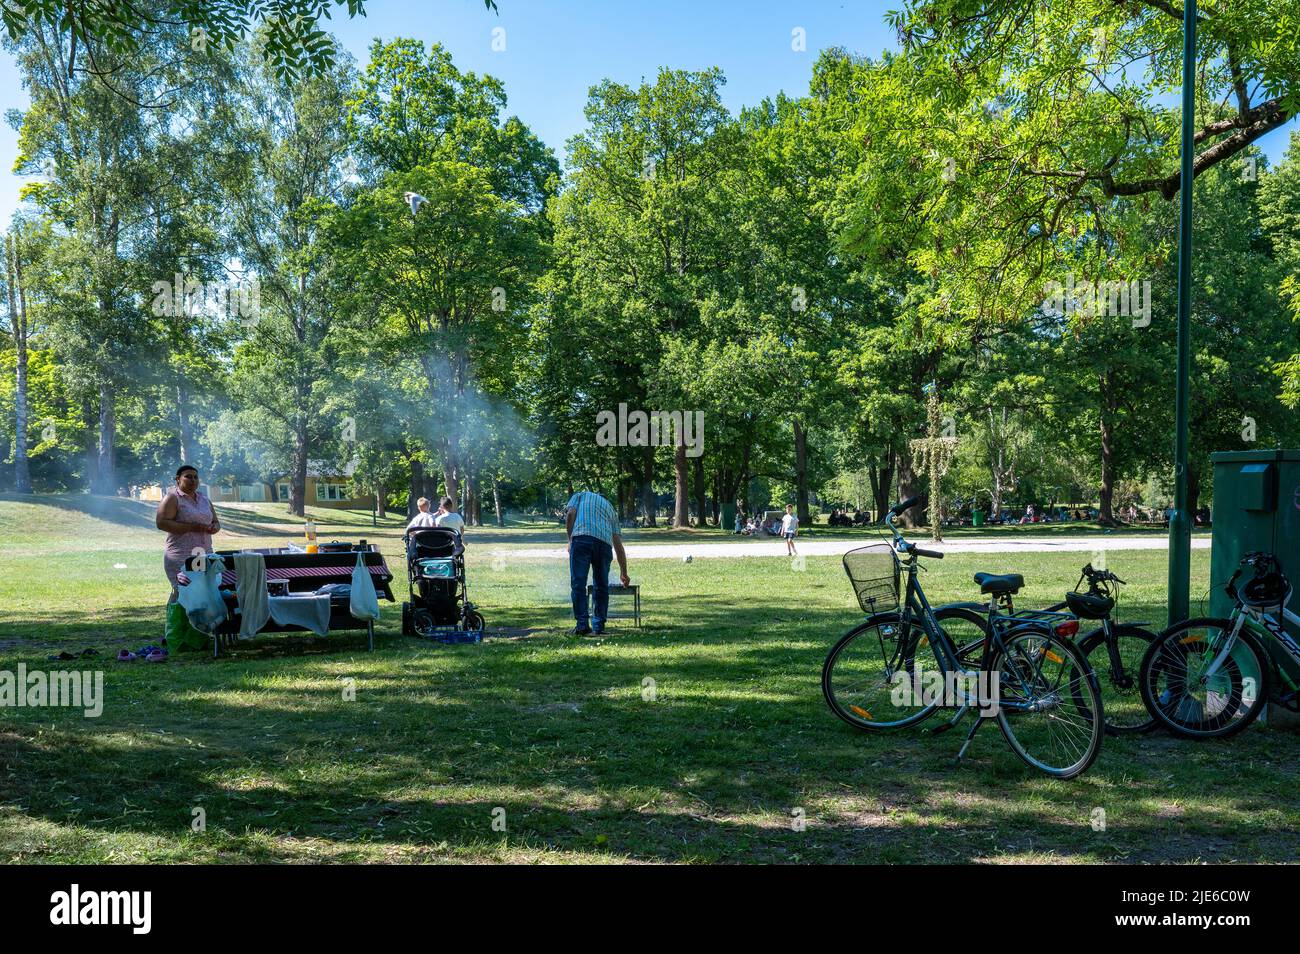 Die Leute genießen ein Picknick-Barbecue auf einem ungewöhnlich warmen und sonnigen Mittsommerurlaub im Stadtpark Folkparken in Norrköping, Schweden Stockfoto